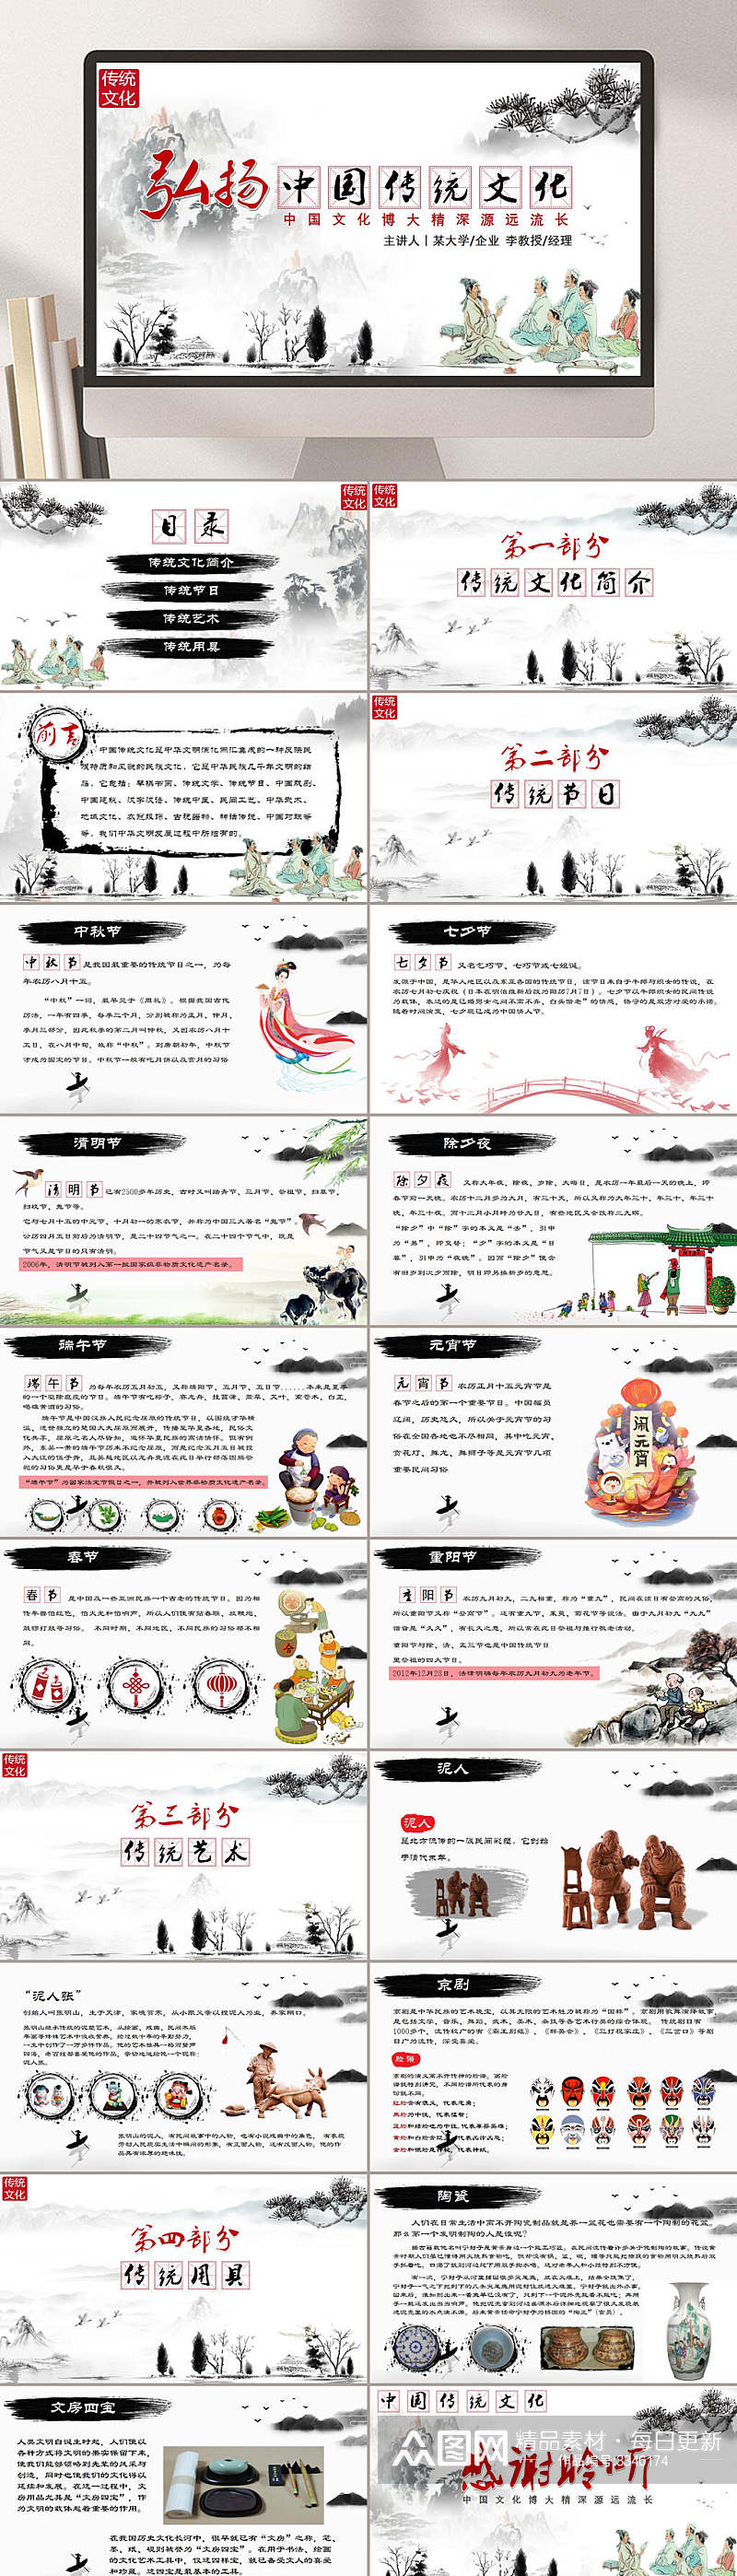 弘扬中国传统文化国学经典PPT素材